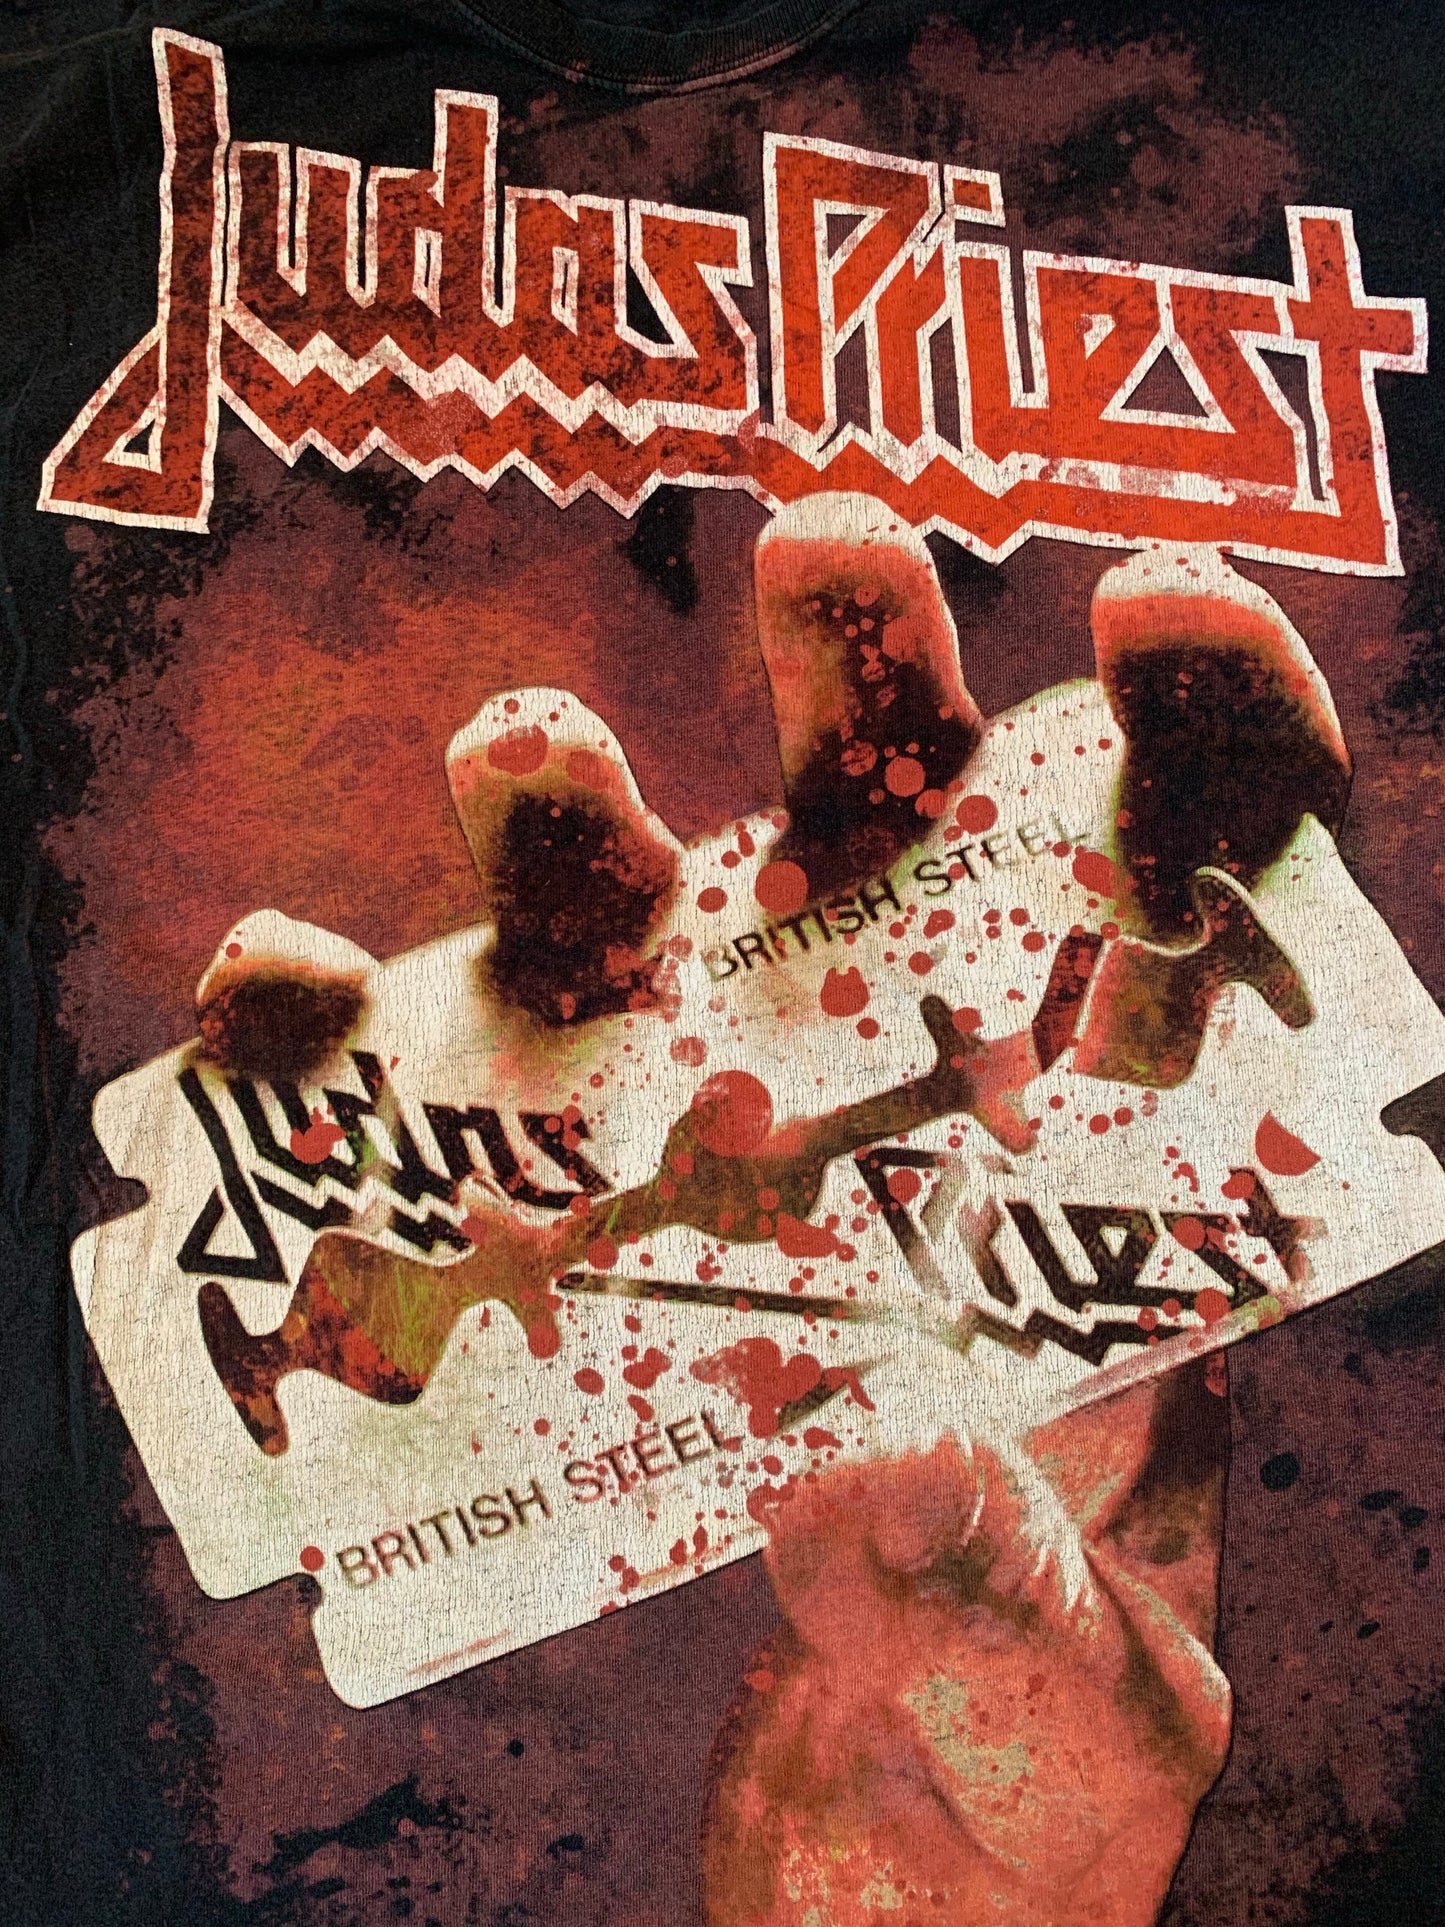 Vintage Judas Priest Blood Splatter British Steel T-Shirt